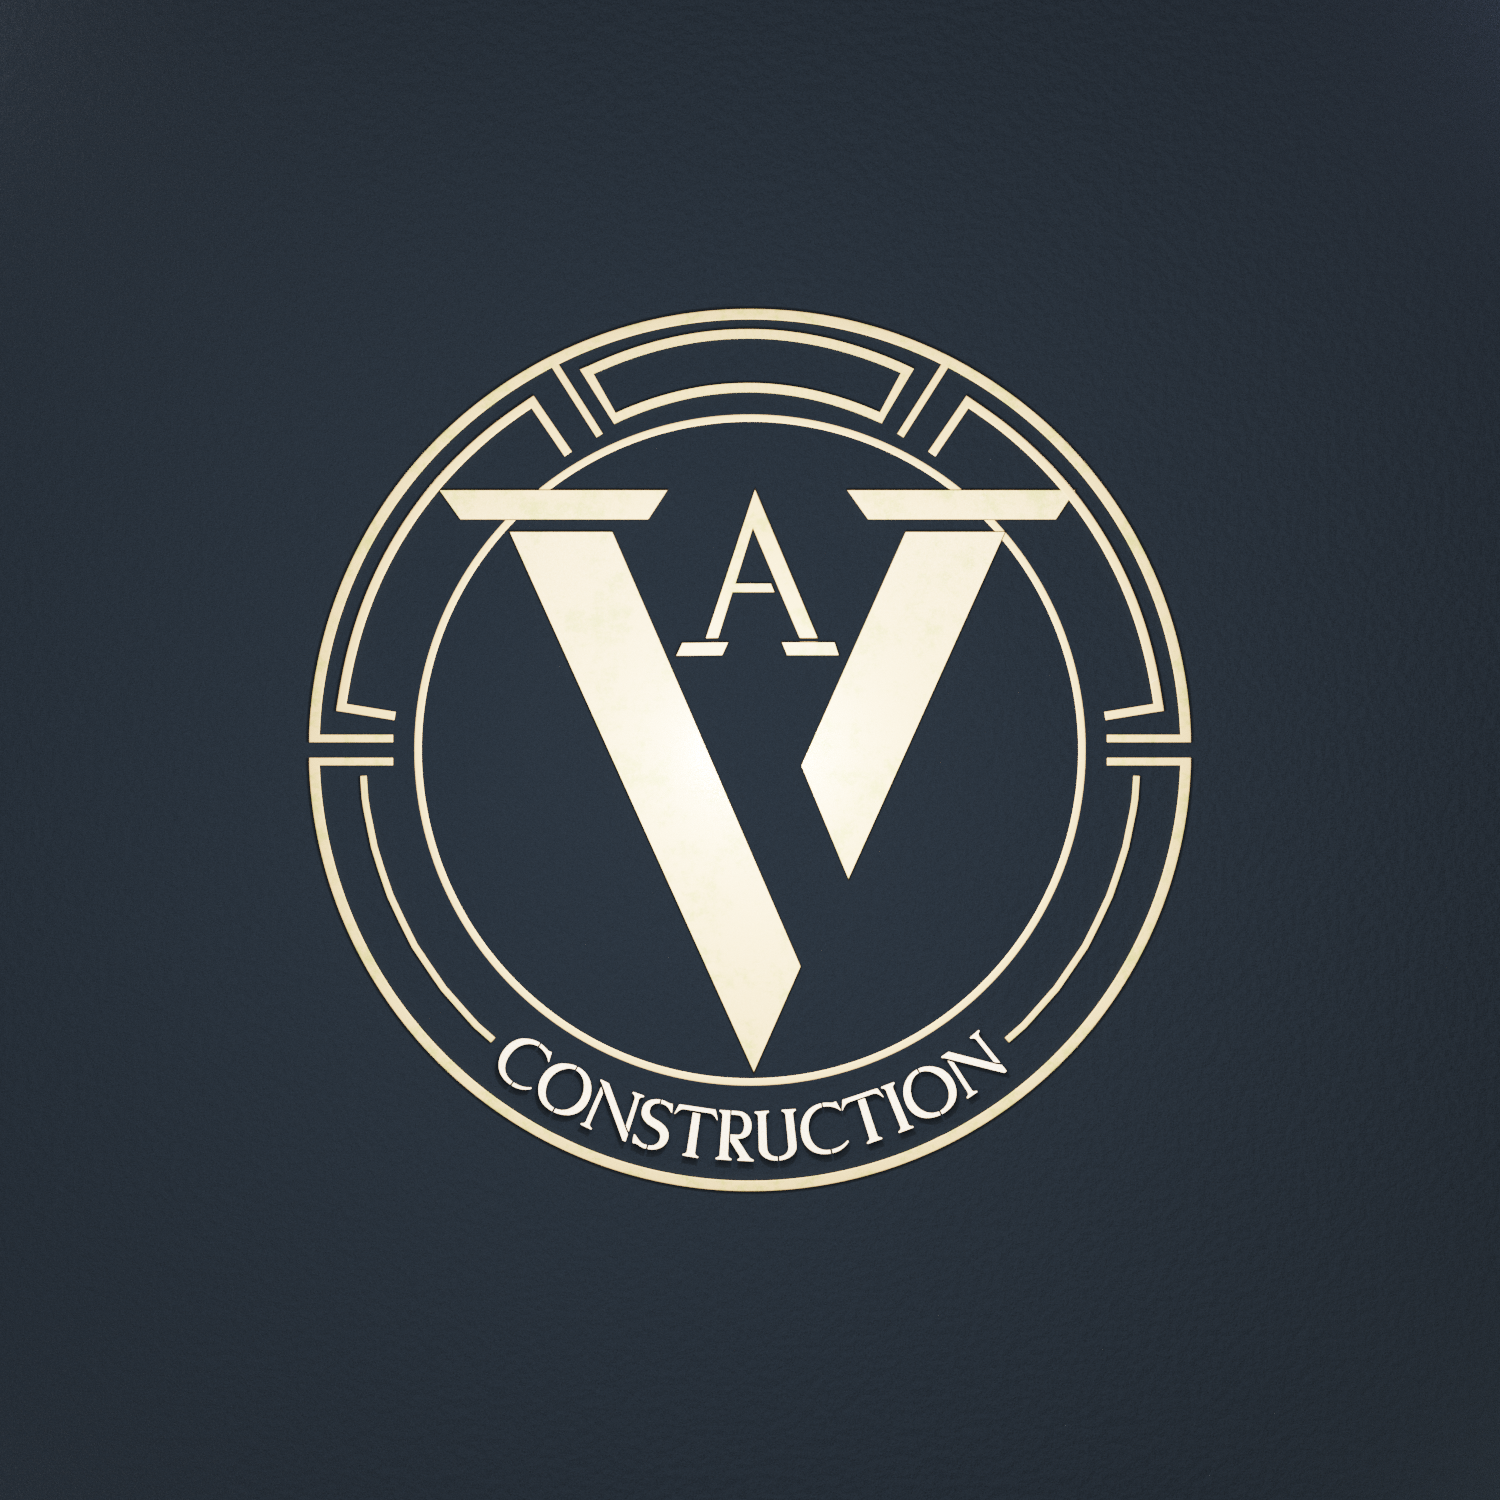 VA Construction LLC Logo